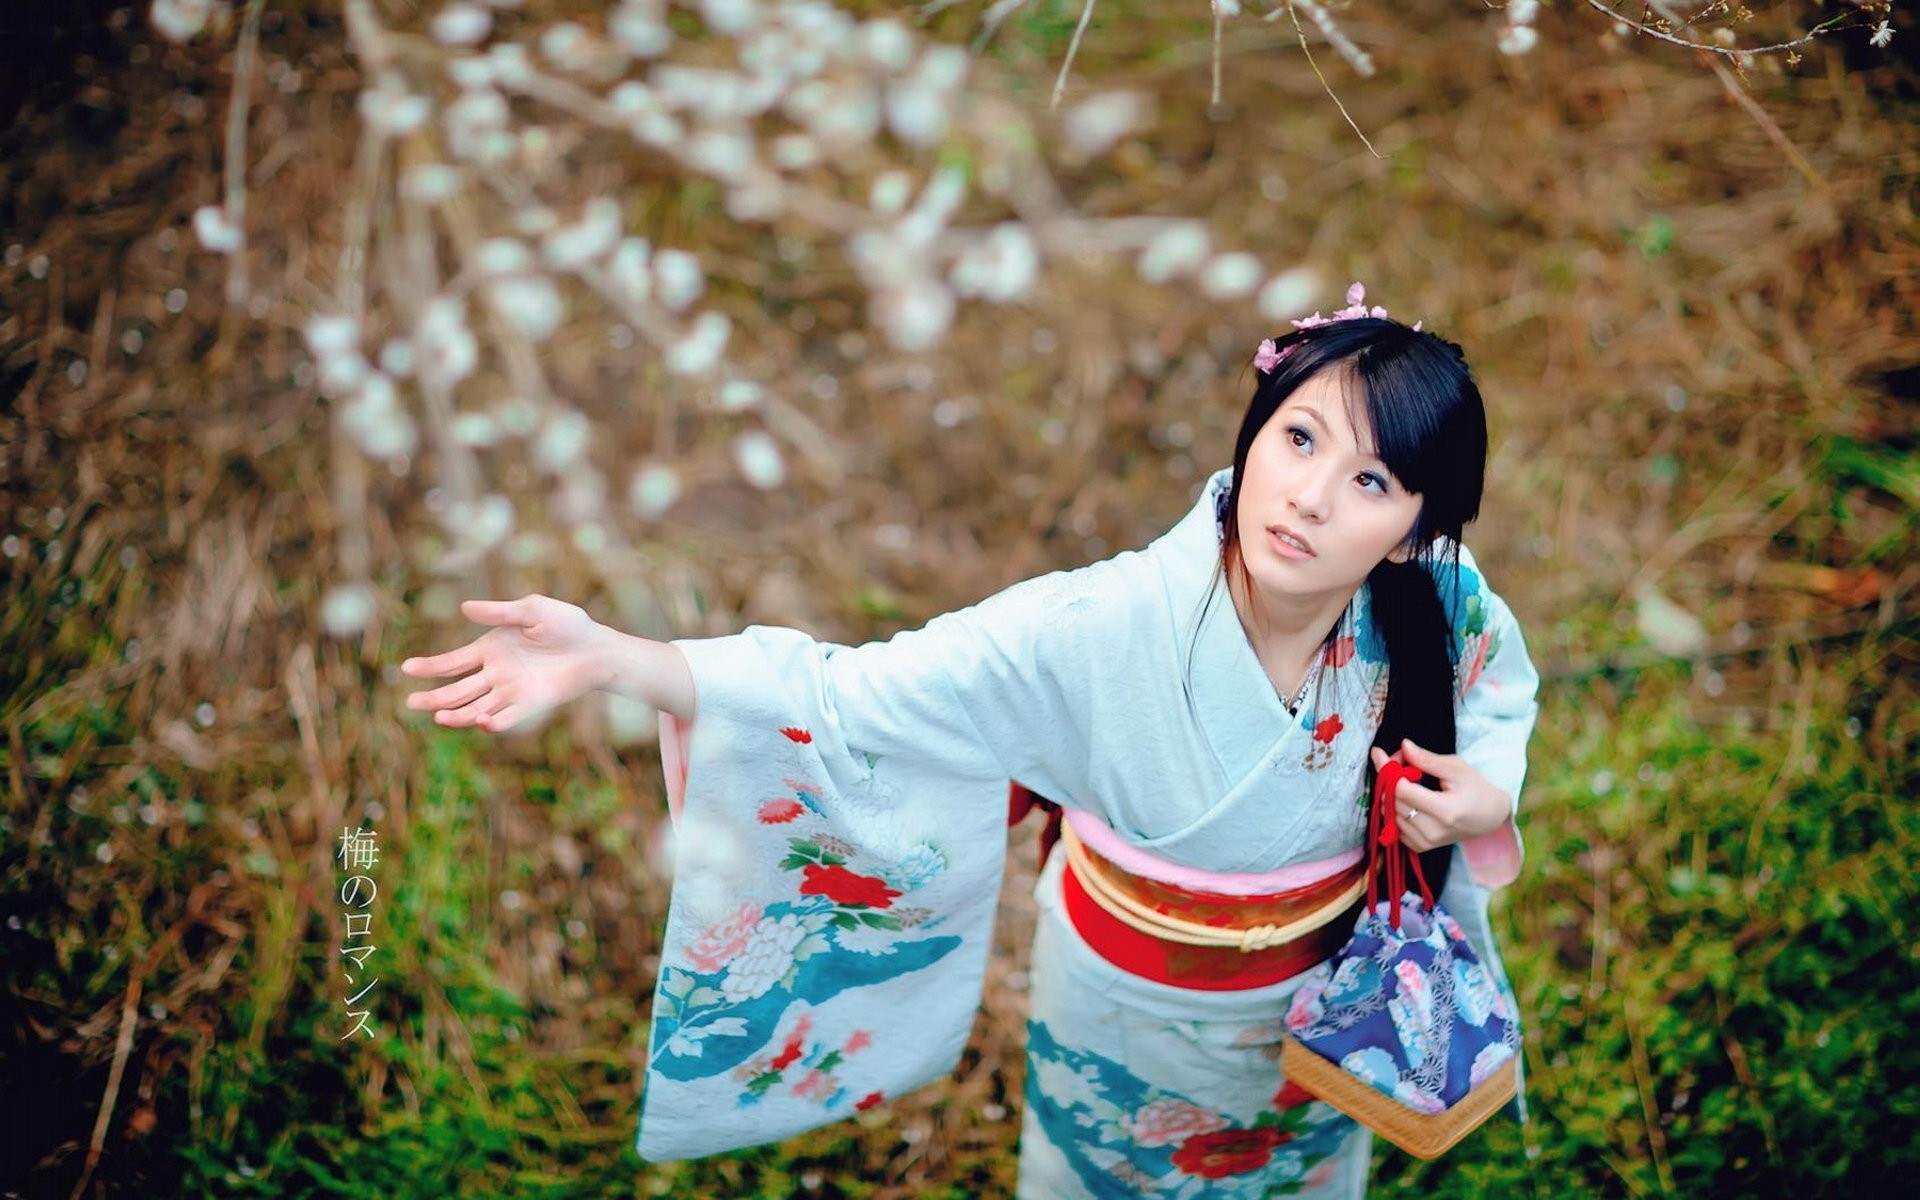 Видео красивой японской девушки. Джапаниз Энай. Японки Токио юката. Kimono певица. Японская девушка в кимоно.